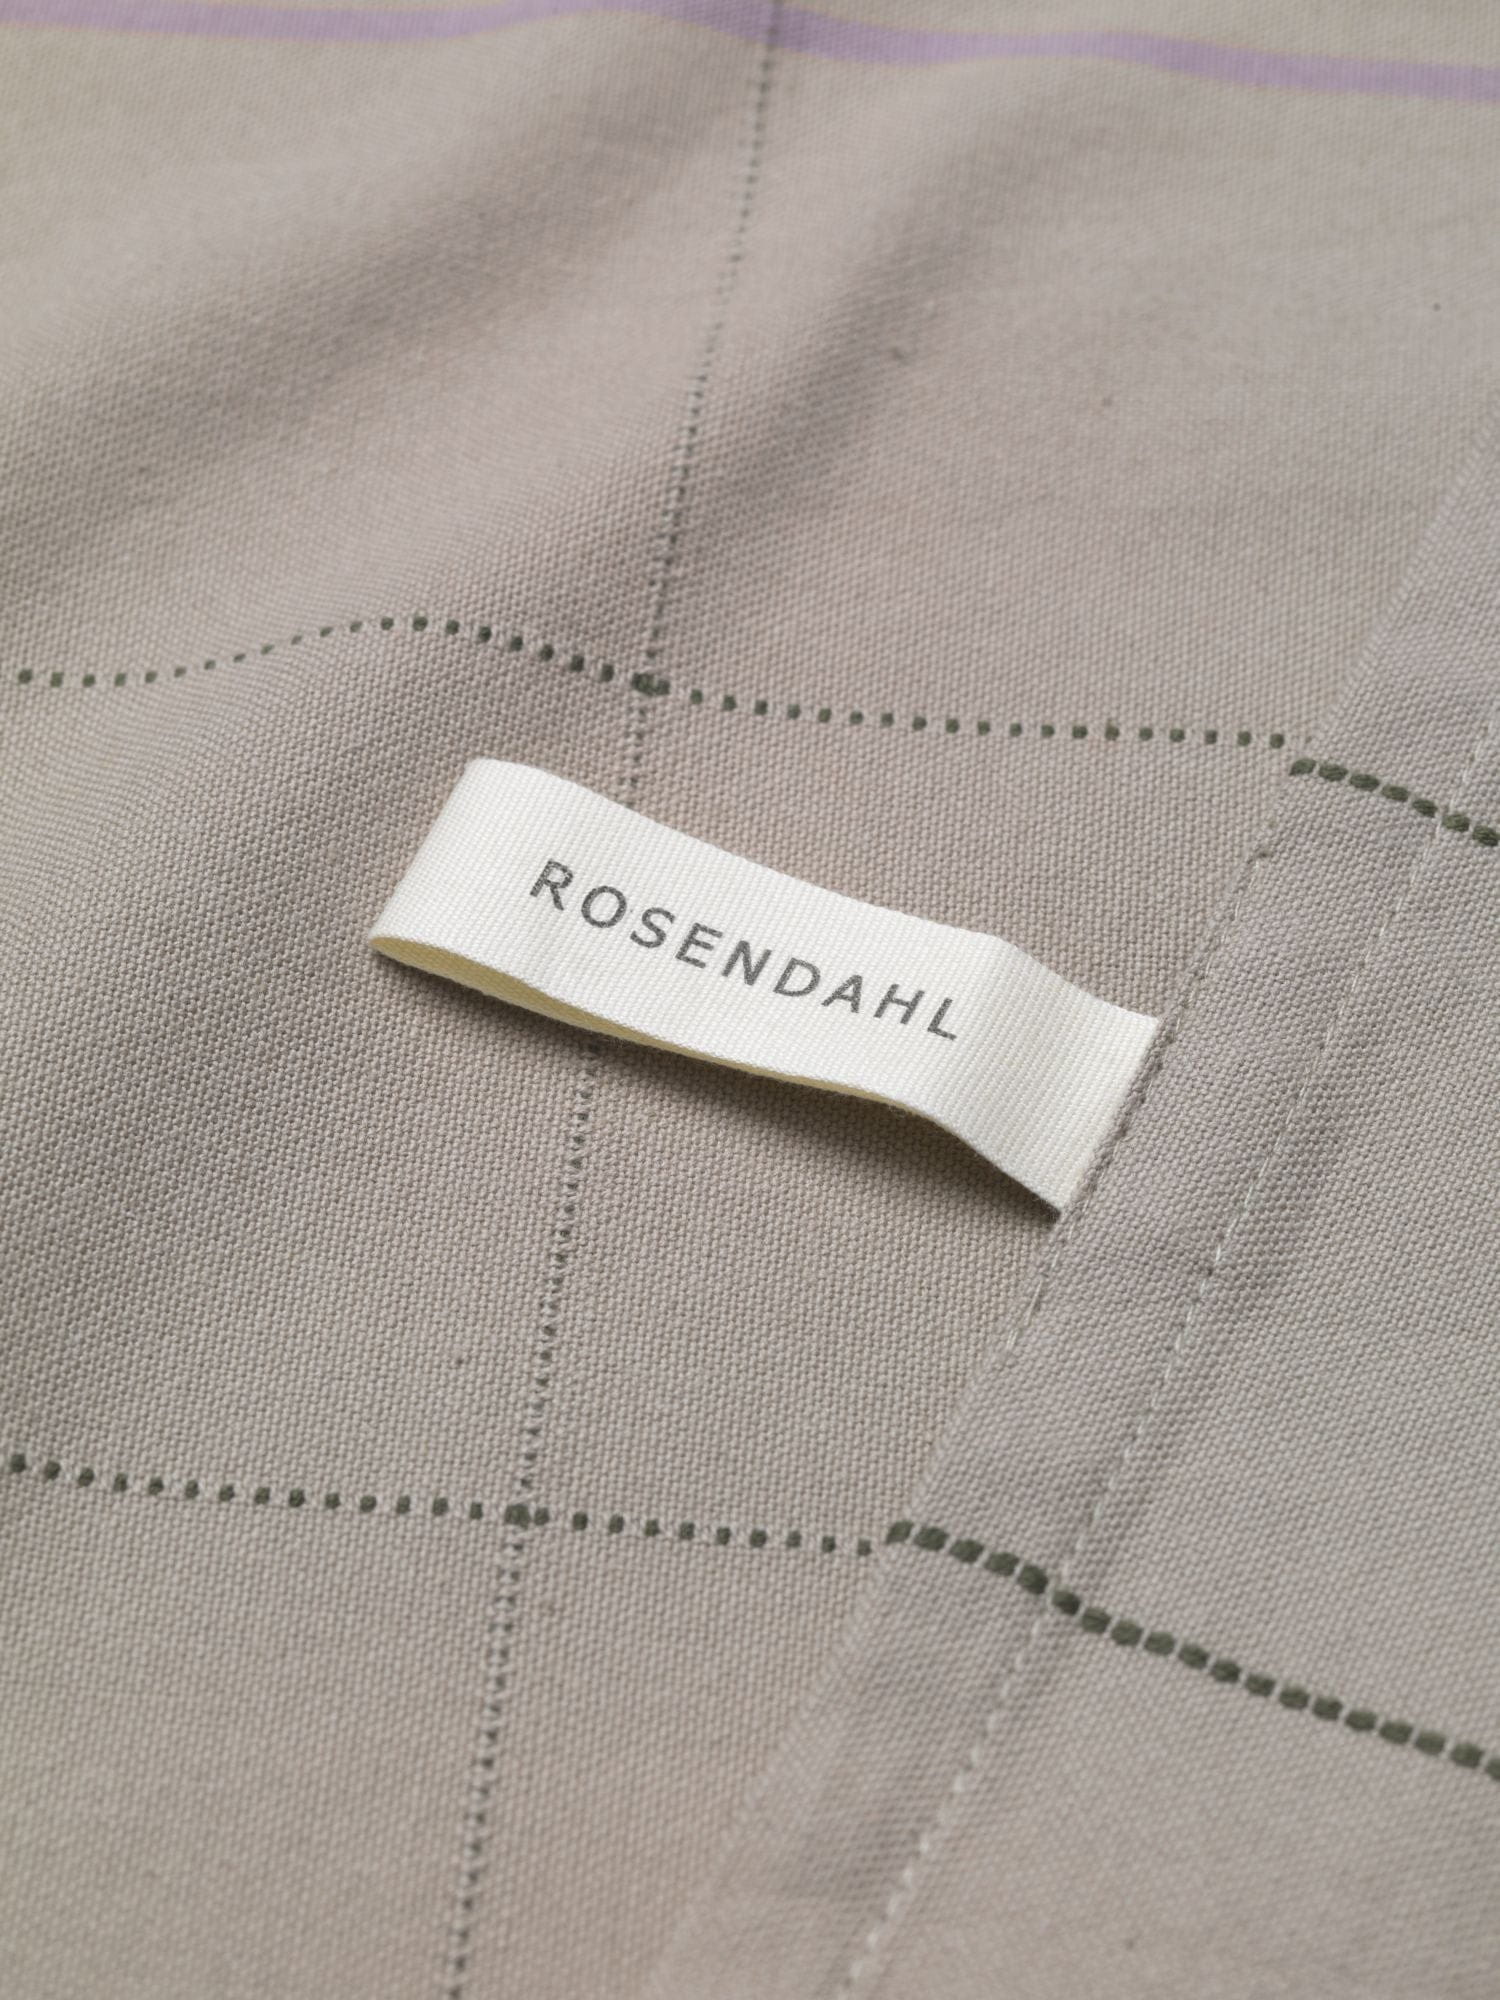 Rosendahl rosendahl textíl gamma tehandklæði 50x70 cm, sandur